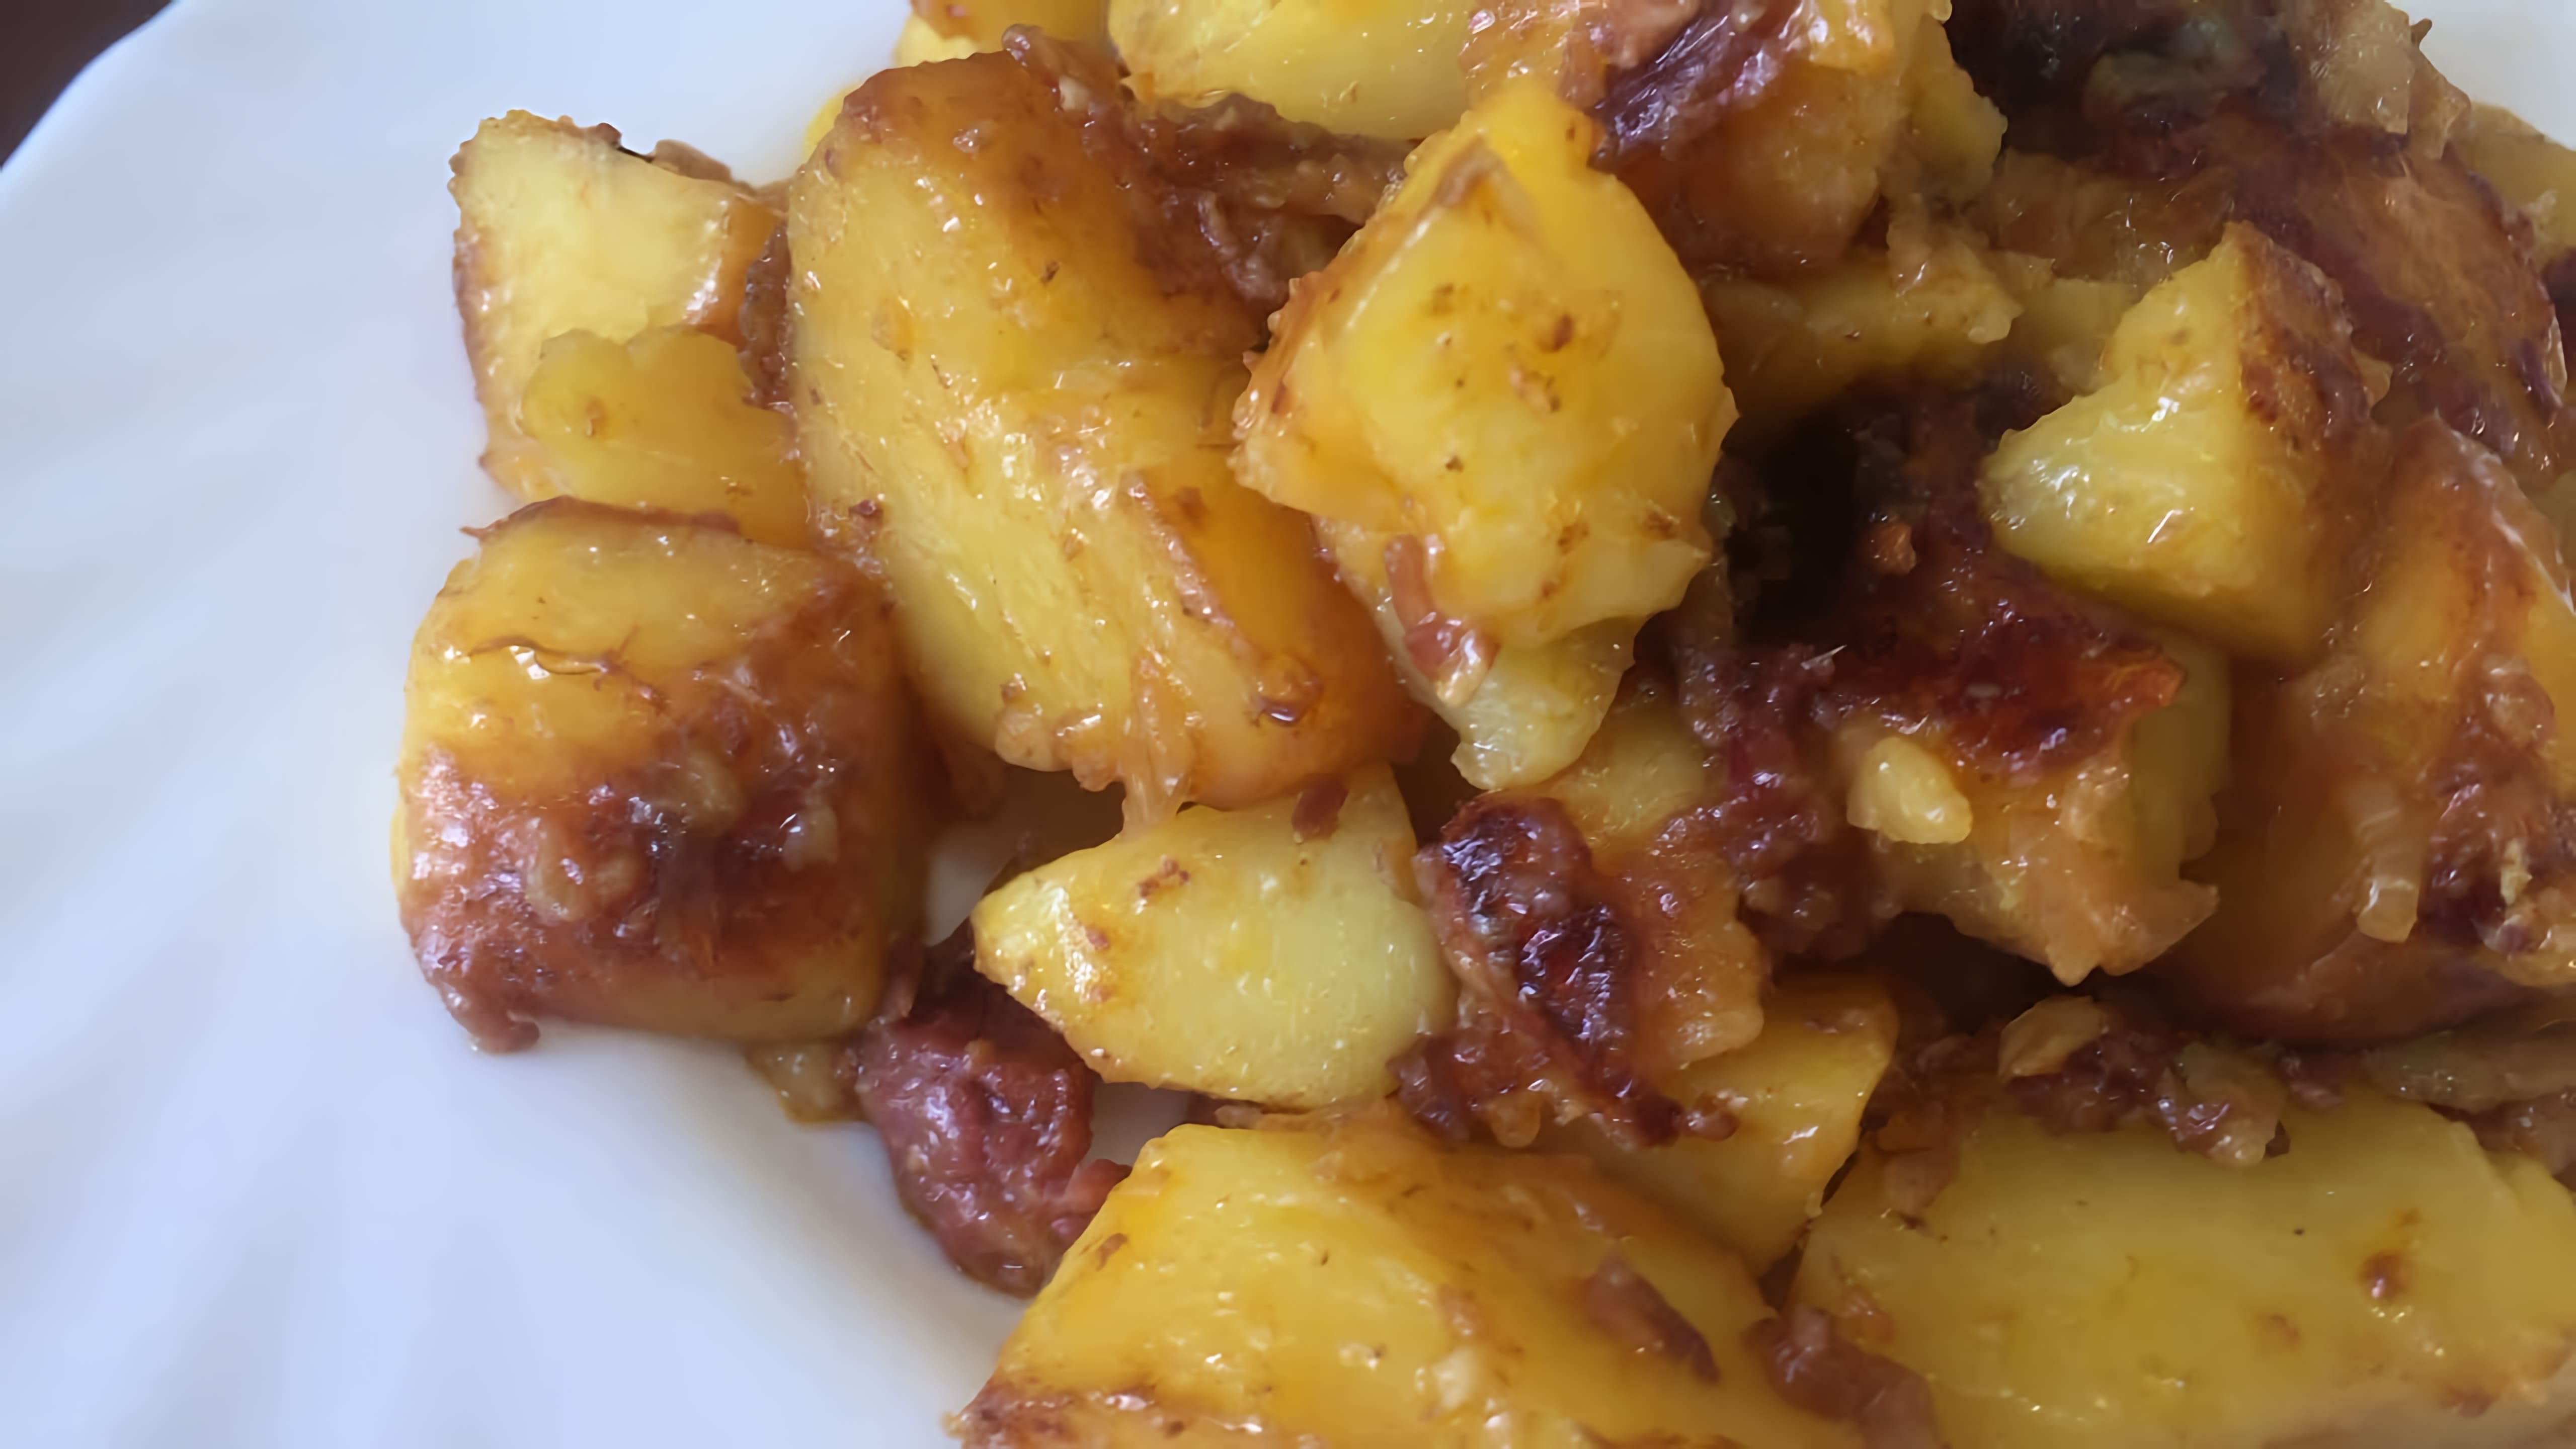 В этом видео демонстрируется процесс приготовления вкусного и быстрого блюда - картошки с тушенкой